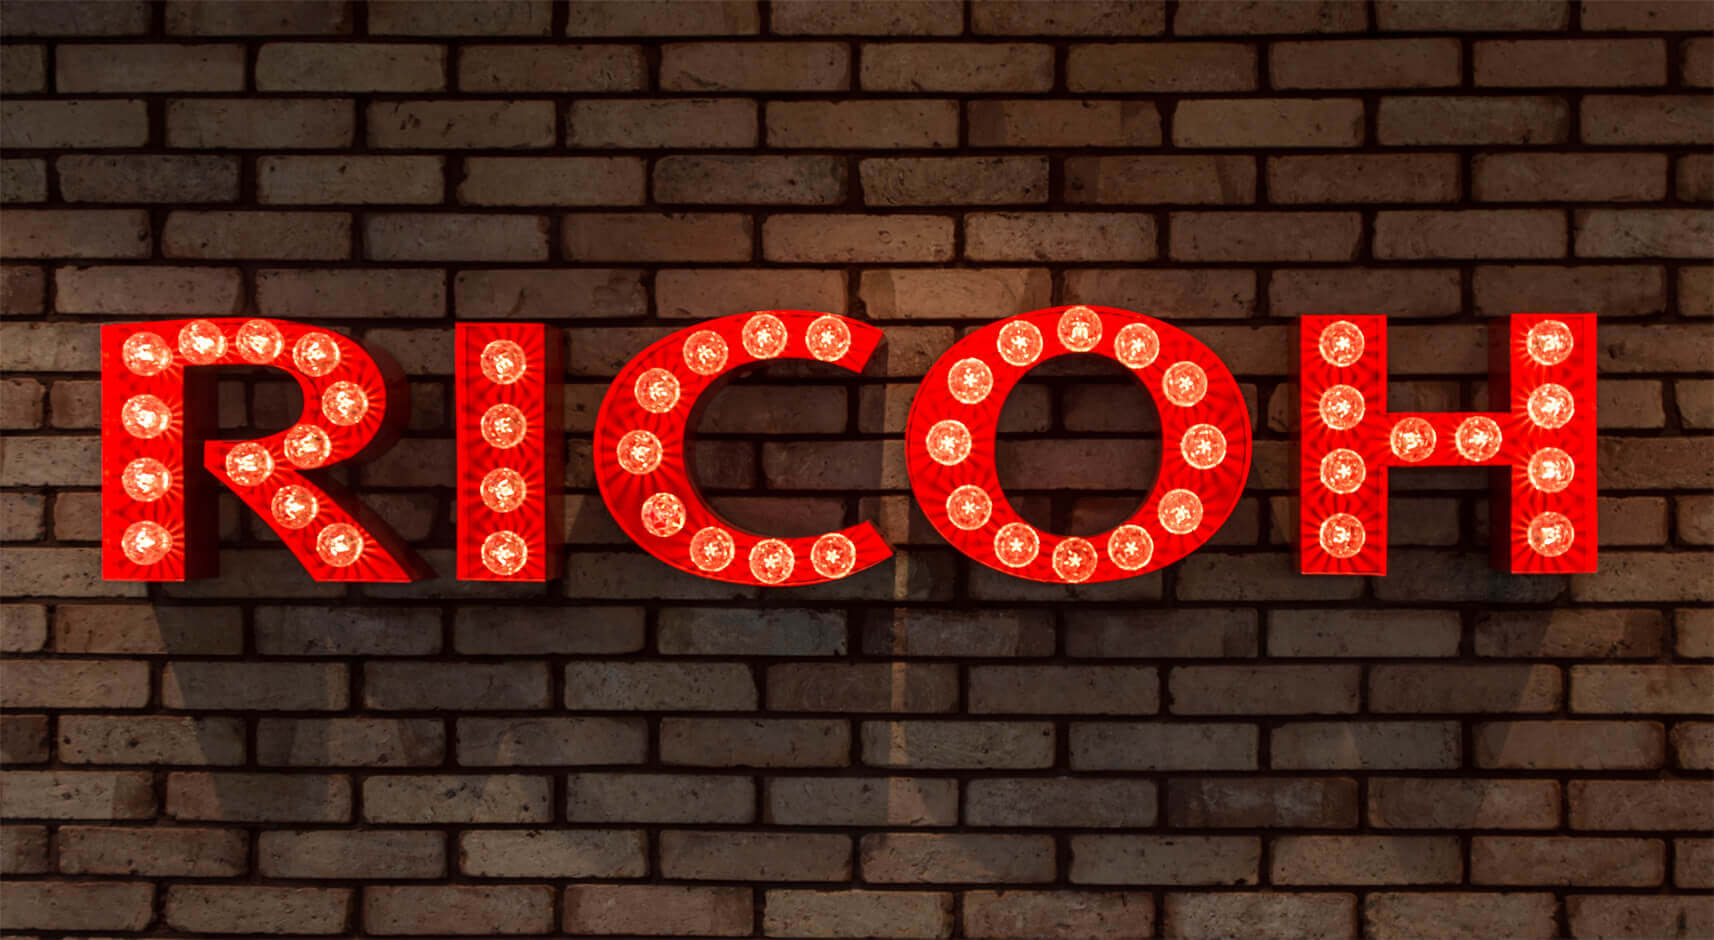 RICOH - RICOH - Letras con bombillas en una pared de ladrillo